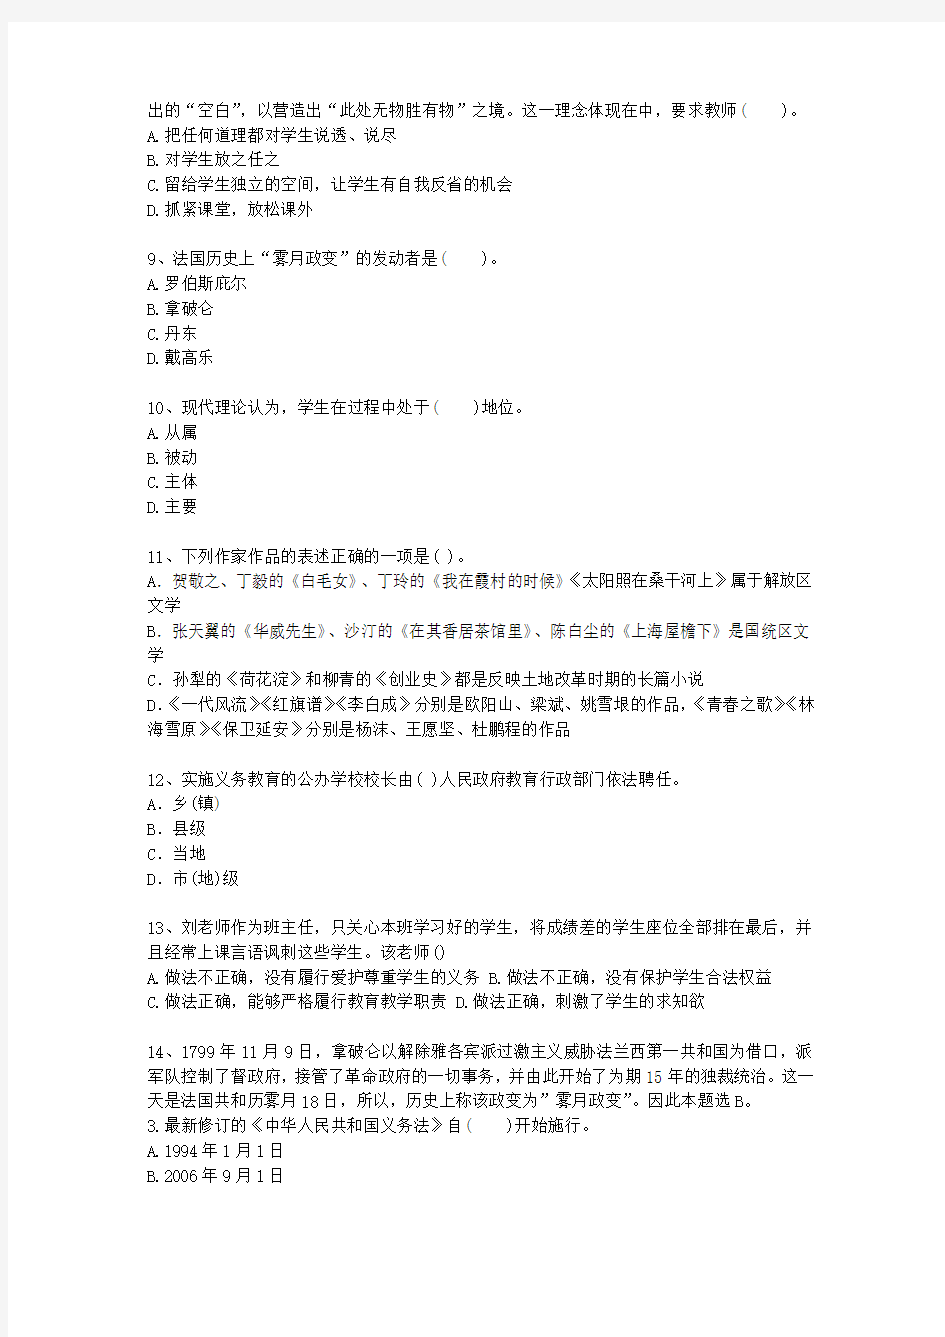 2014香港特别行政区教师资格证考试最新考试试题库(完整版)